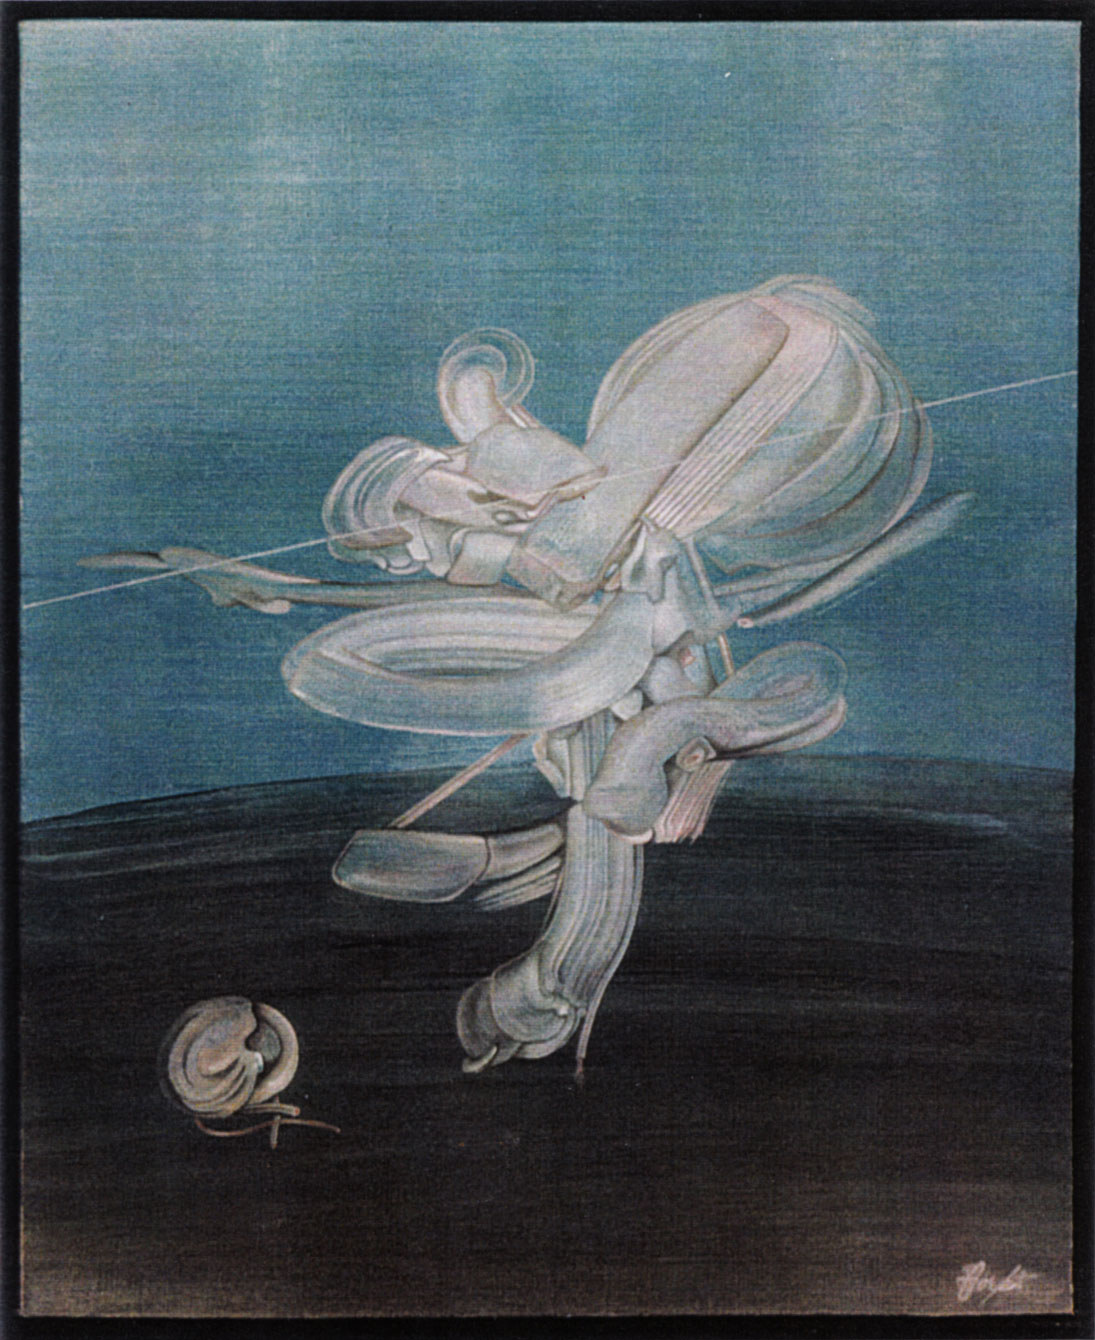 “Bal astral”, huile sur toile, 61 x 50 cm, coll. Charles Villeneuve, Paris, 1975.